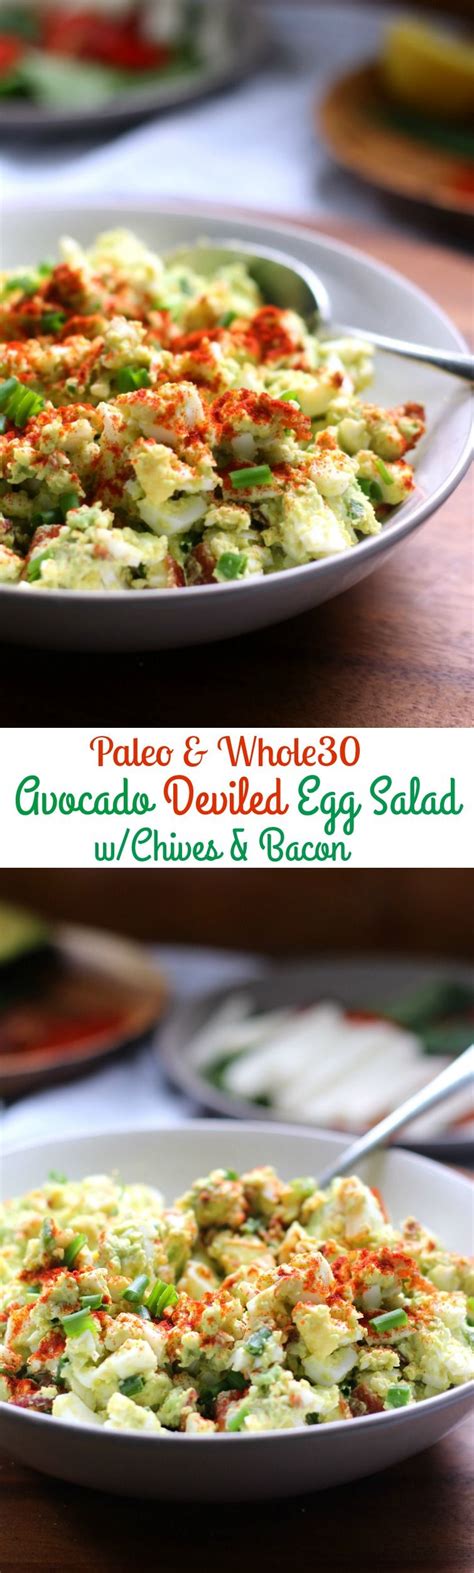 avocado egg salad paleo egg salad paleo snack paleo salads paleo